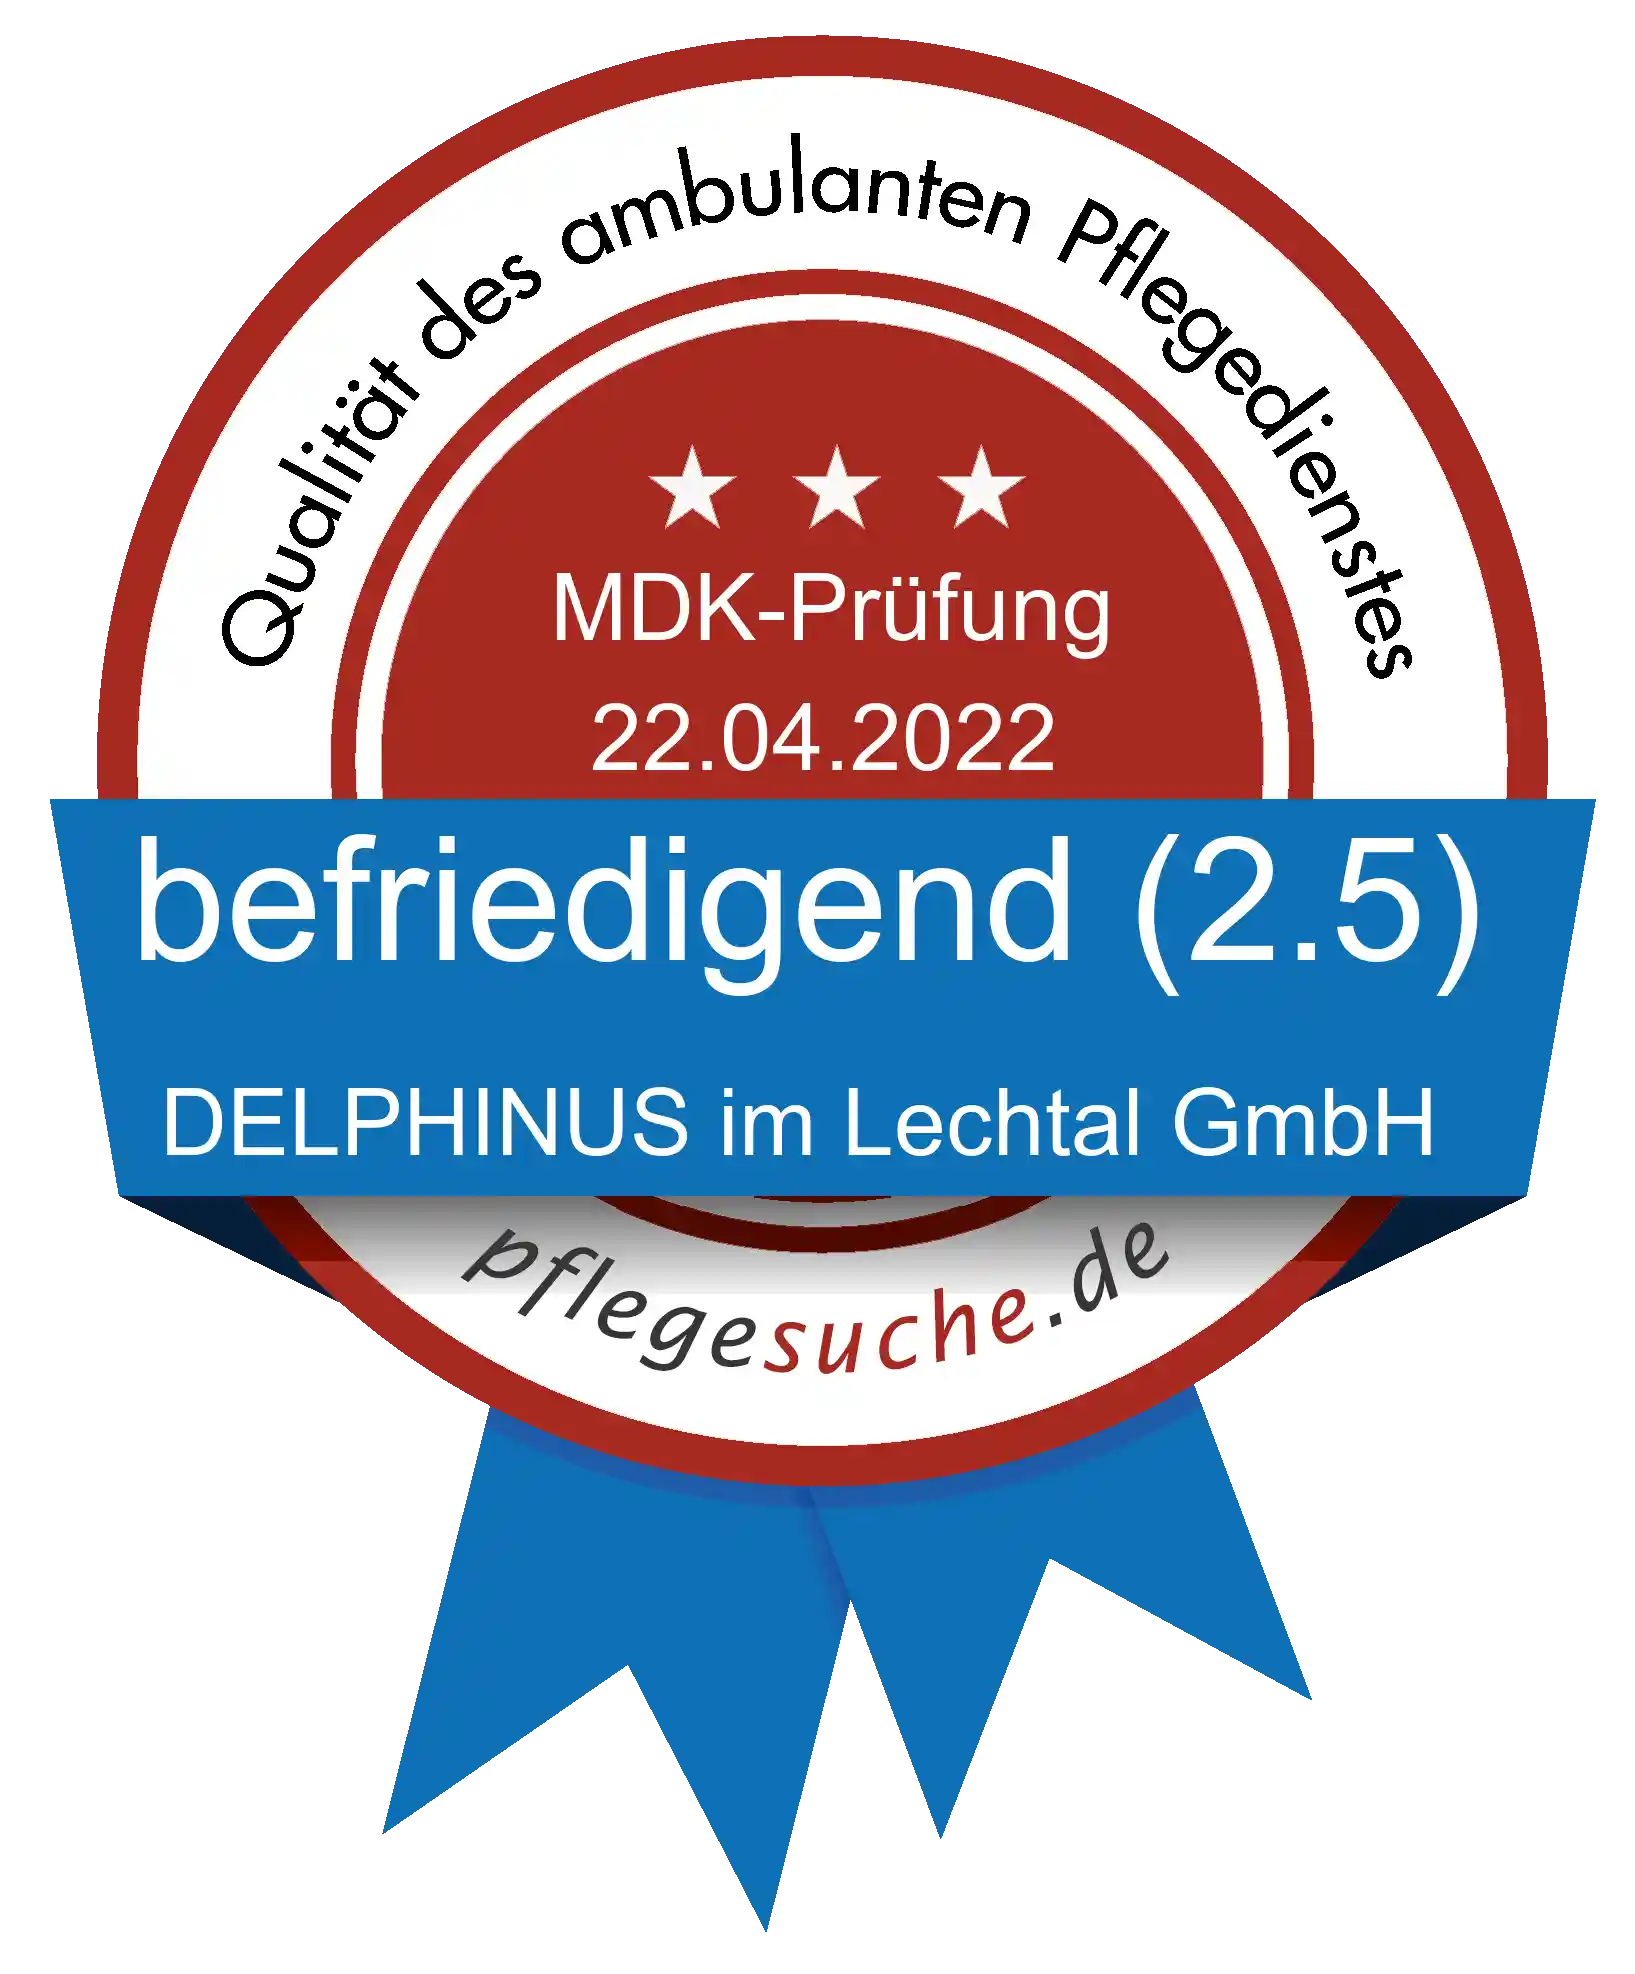 Siegel Benotung: DELPHINUS im Lechtal GmbH